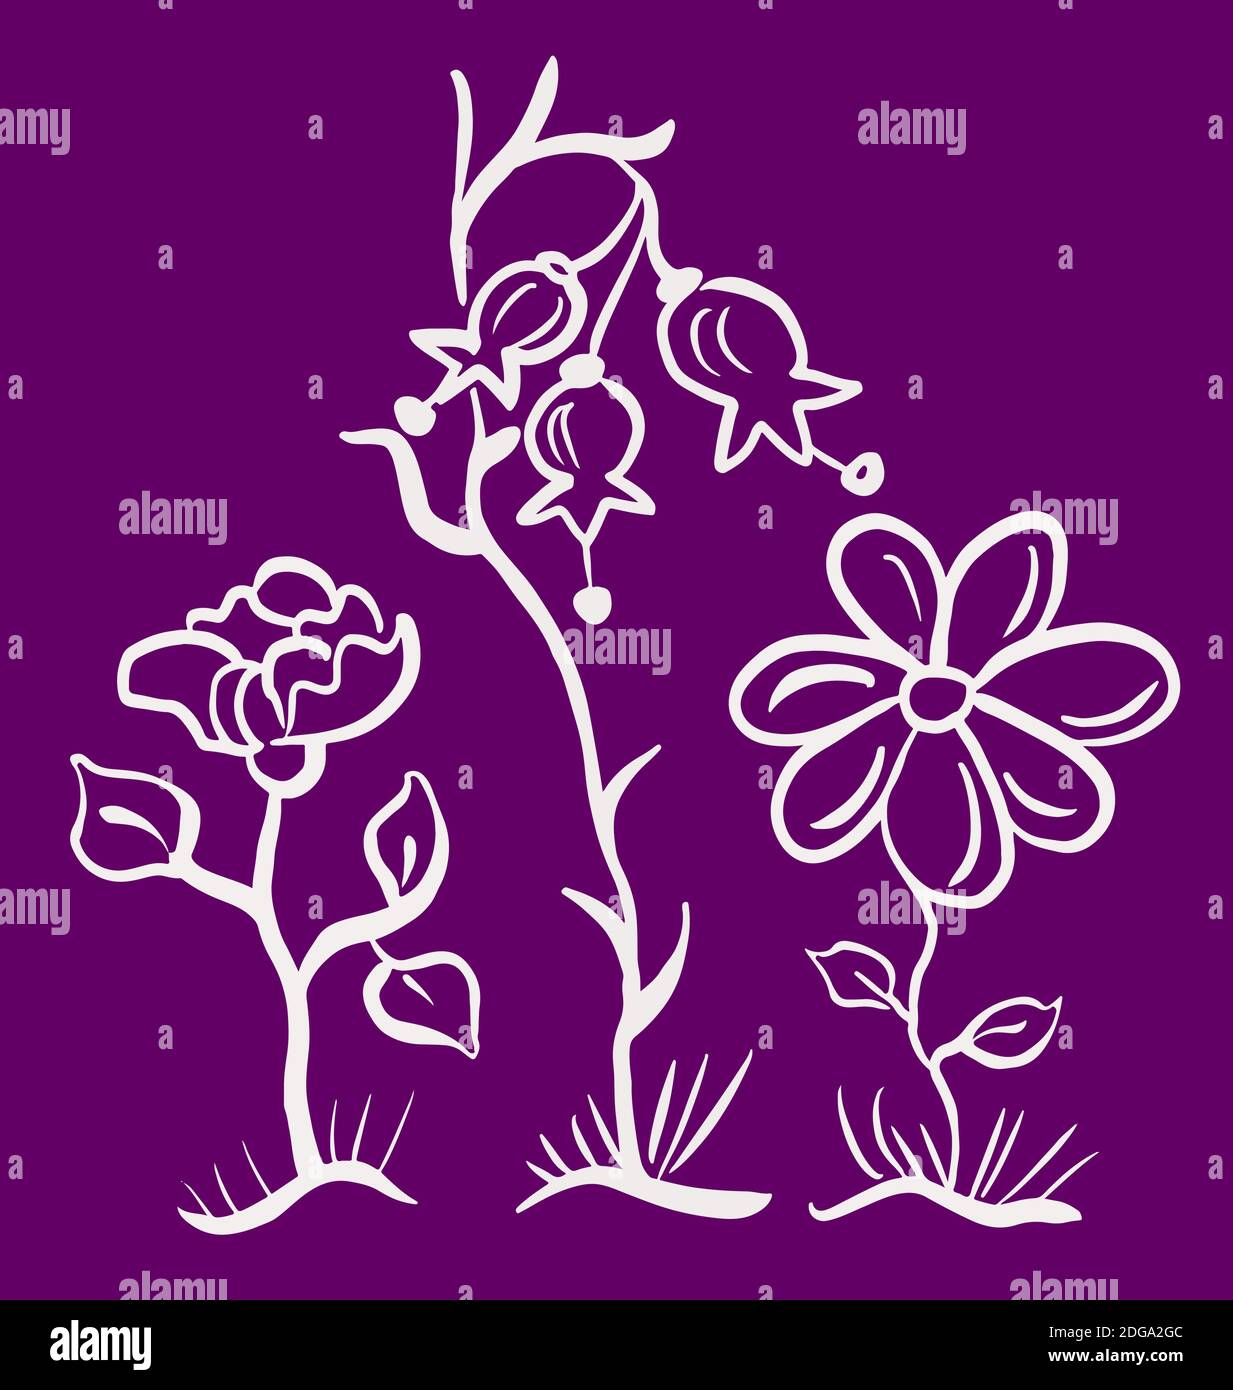 Trois fleurs de contour dessinées à la main, cloche, rose, Marguerite, contours isolés eps10 illustration vecror. Illustration de Vecteur